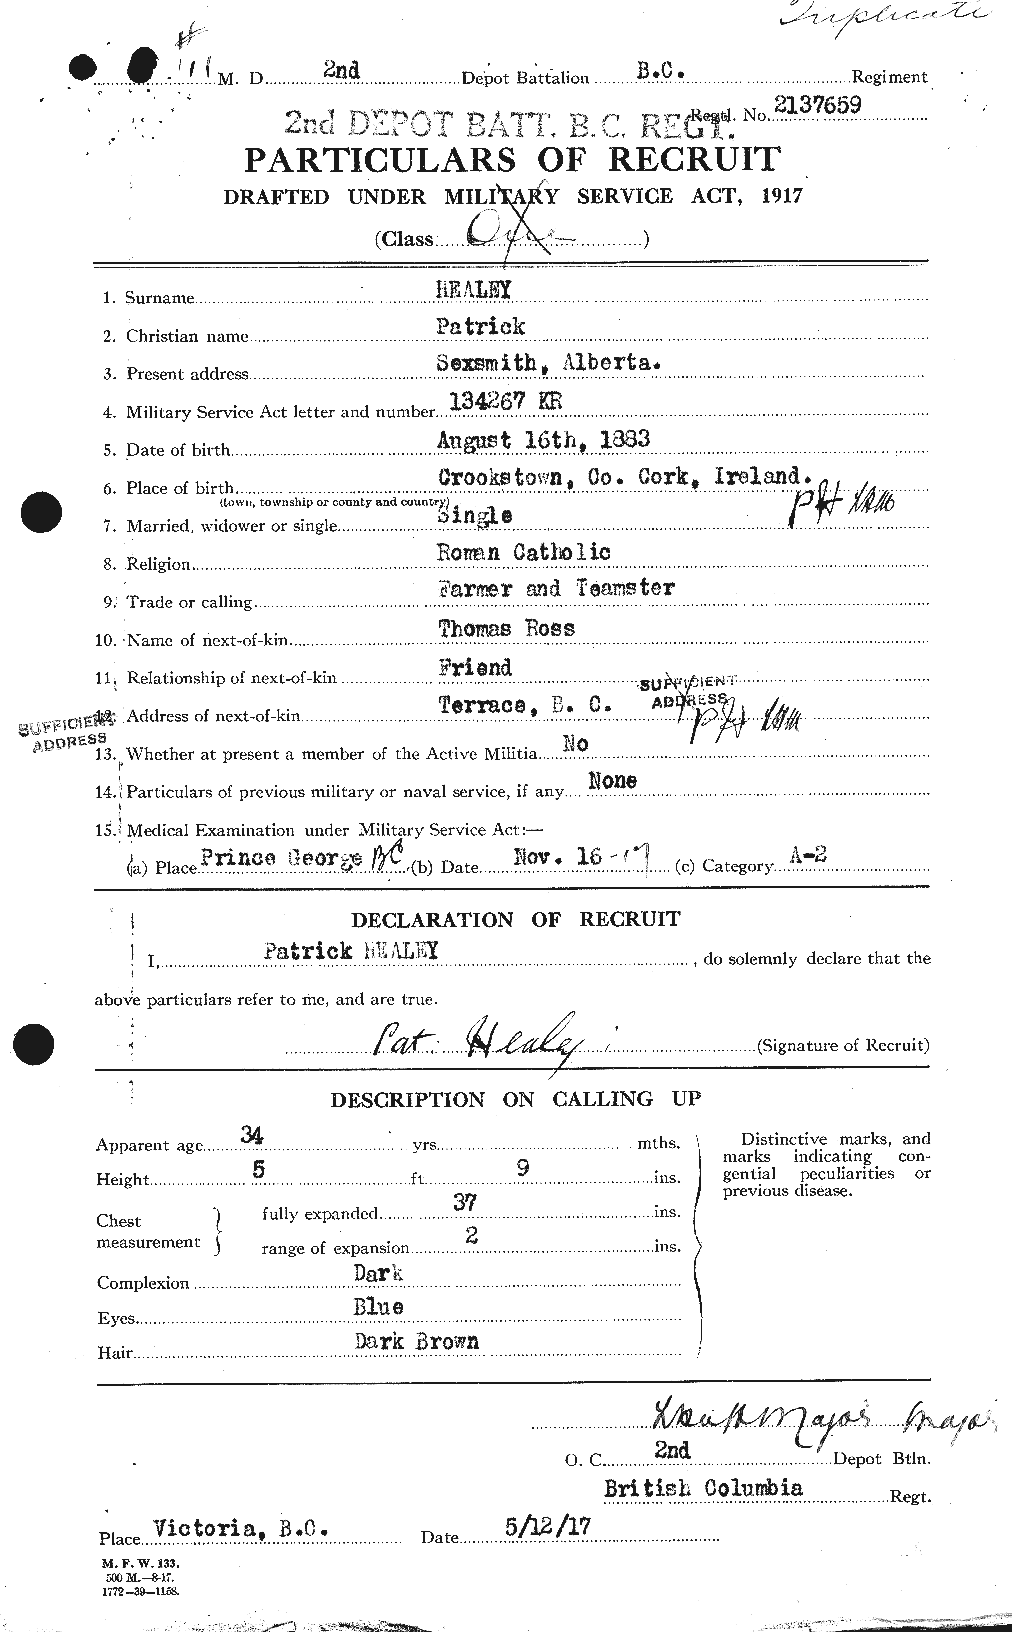 Dossiers du Personnel de la Première Guerre mondiale - CEC 383837a